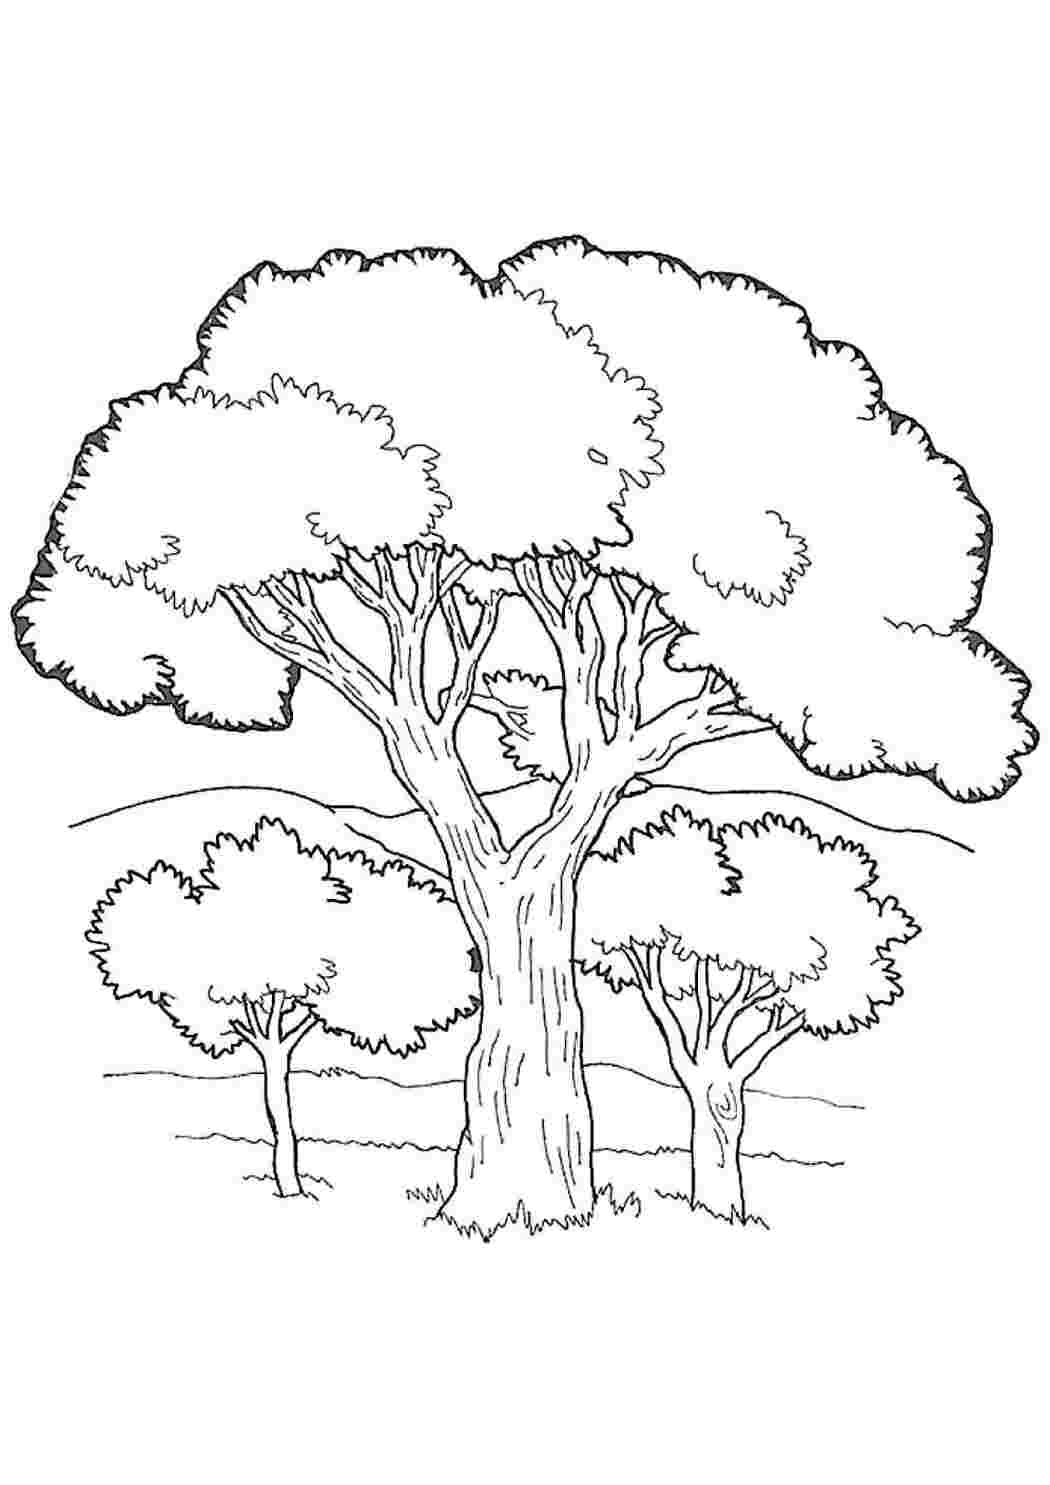 Дерево дуб рисунок для детей раскраска